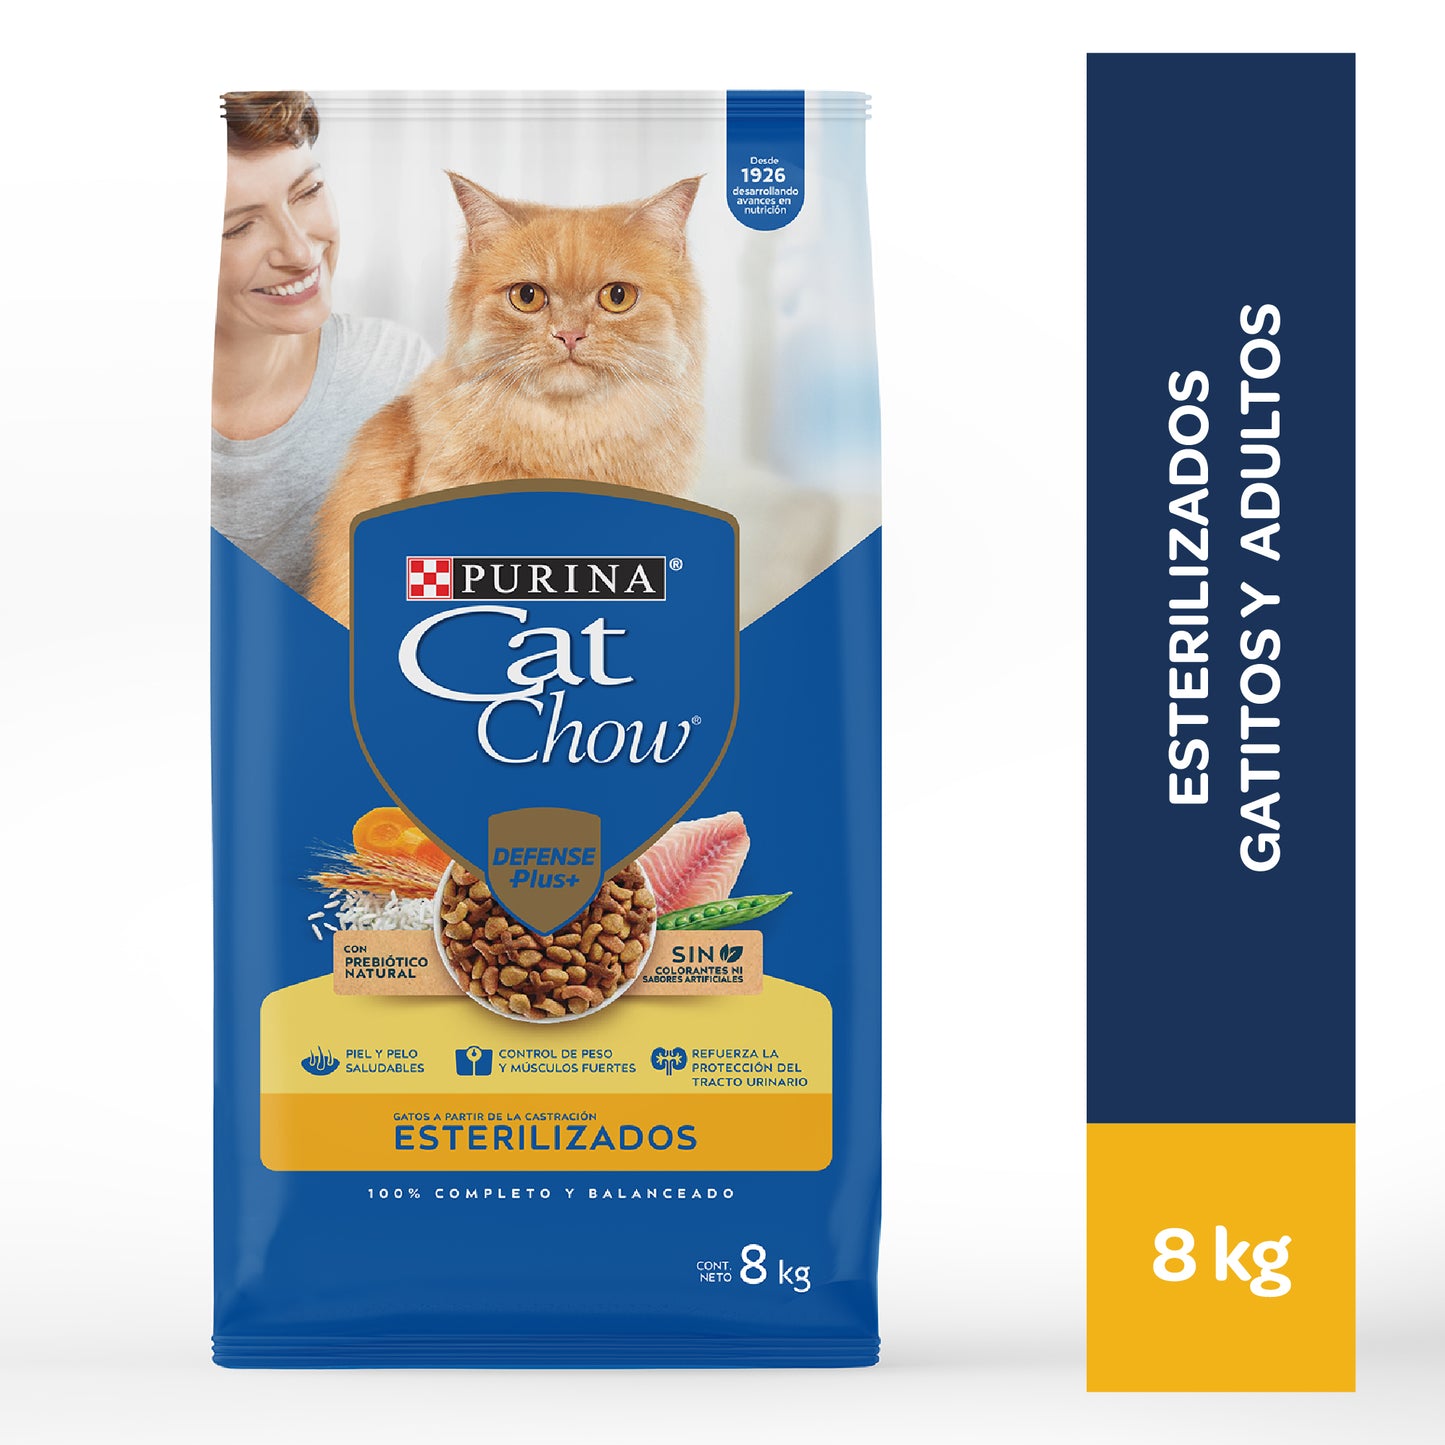 Cat Chow Adultos esterilizados 8kg